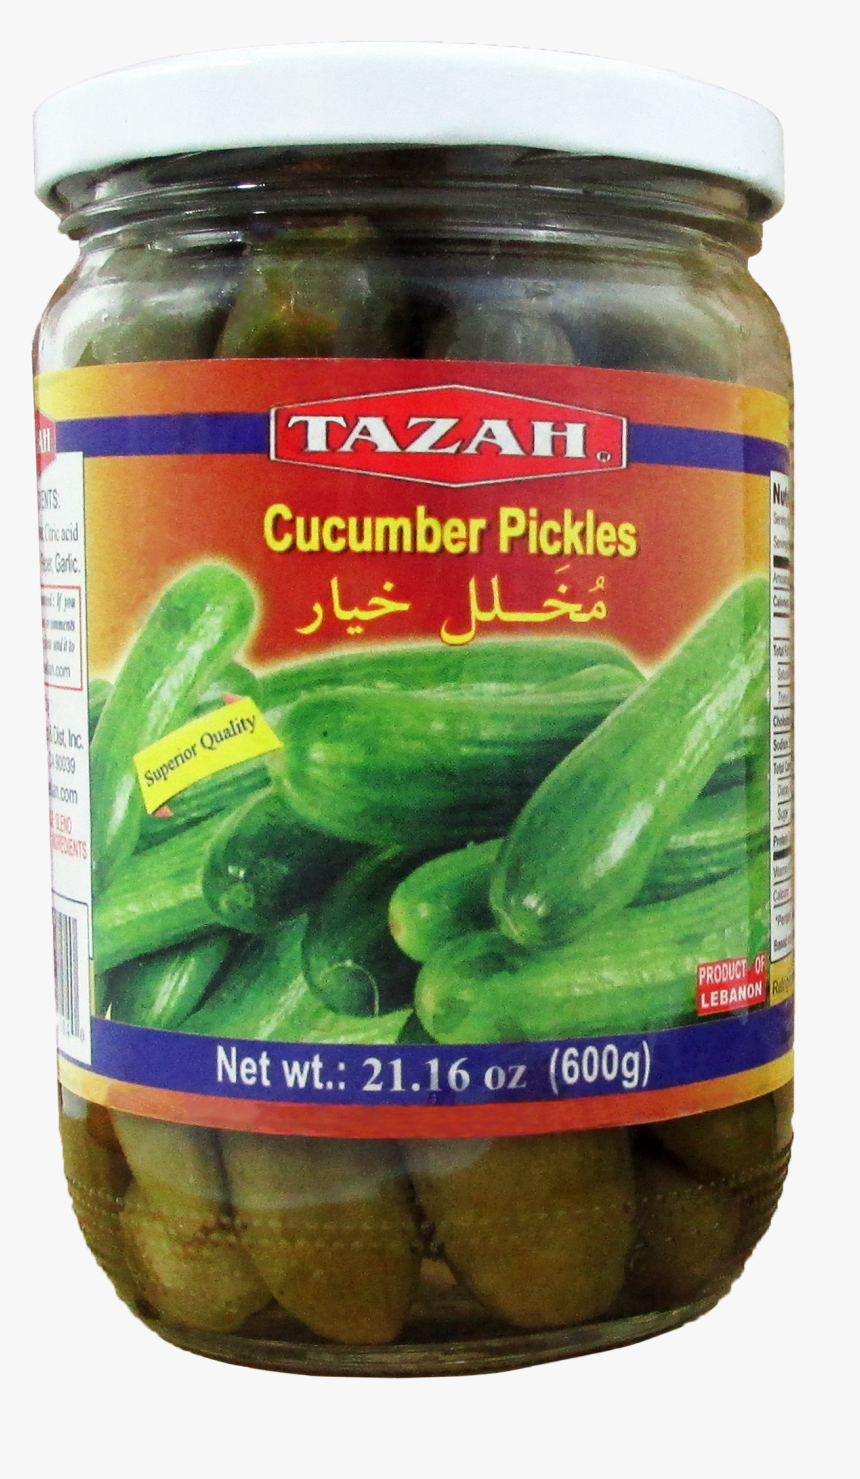 Tazah Cucumber Pickle"
 Title="tazah Cucumber Pickle - Tazah Cucumber Pickles, HD Png Download, Free Download